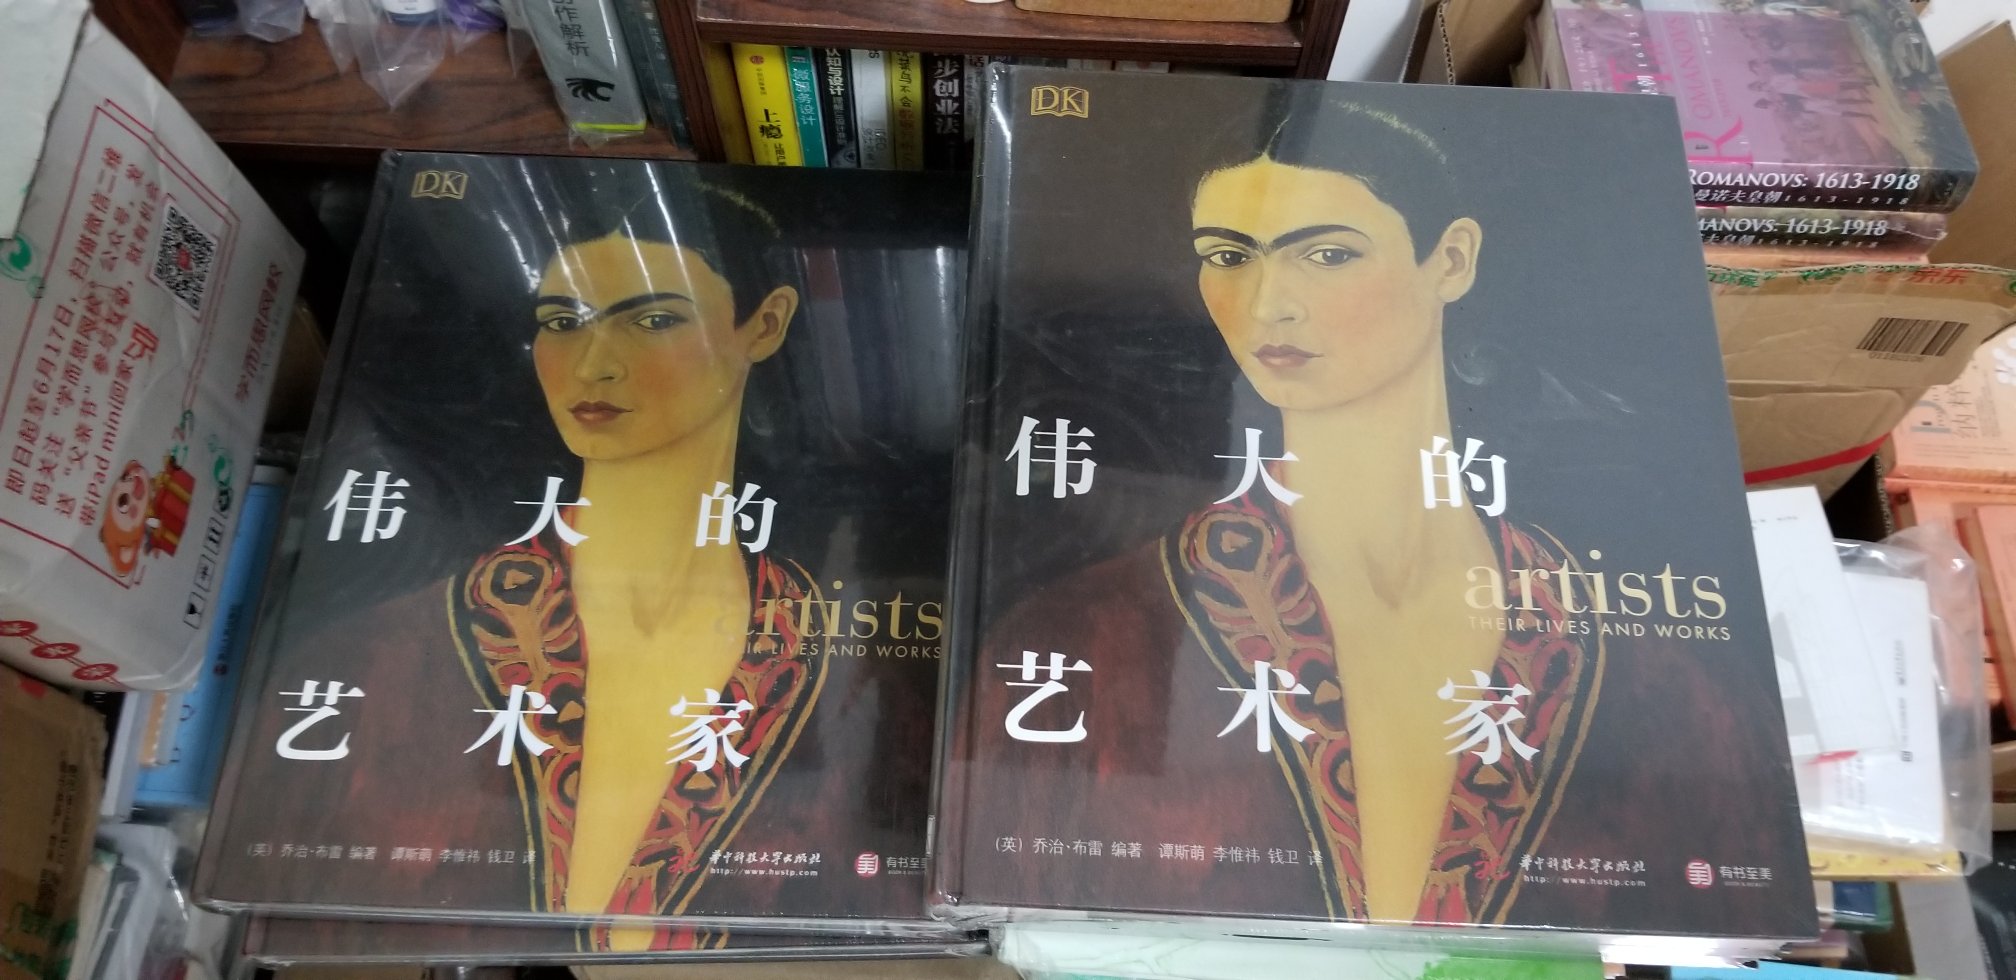 这本书我在深圳诚品书店看了好久，很喜欢，无奈实体书店没有折扣，价格算下来很贵。忍痛不买，结果在看到了特价，还可以满减，算下来真的太划算了，一不小心买了几本，送人自用皆相宜，下次还来买，我永远跟#是兄弟。